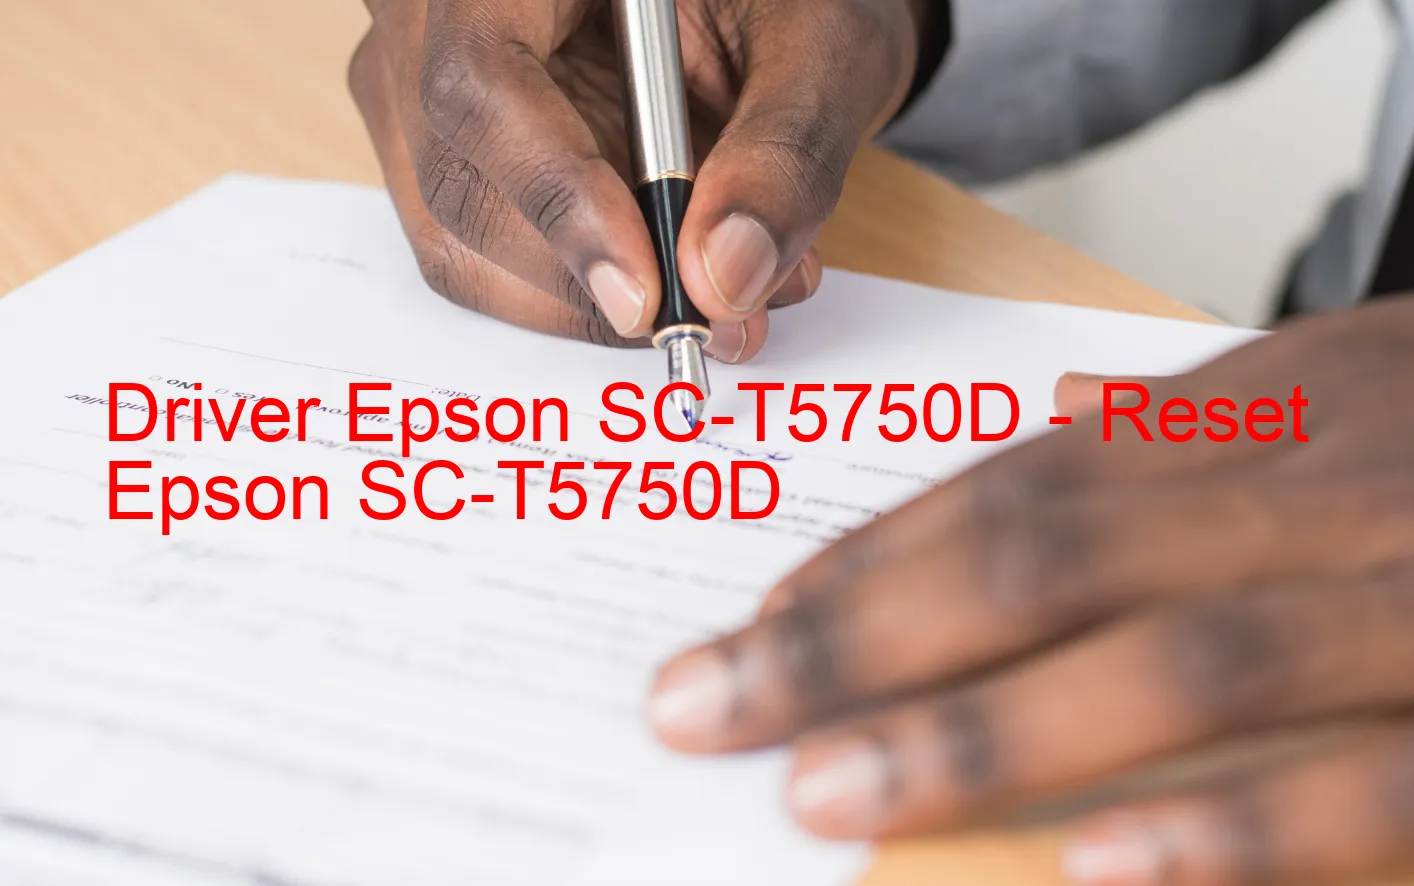 Epson SC-T5750Dのドライバー、Epson SC-T5750Dのリセットソフトウェア